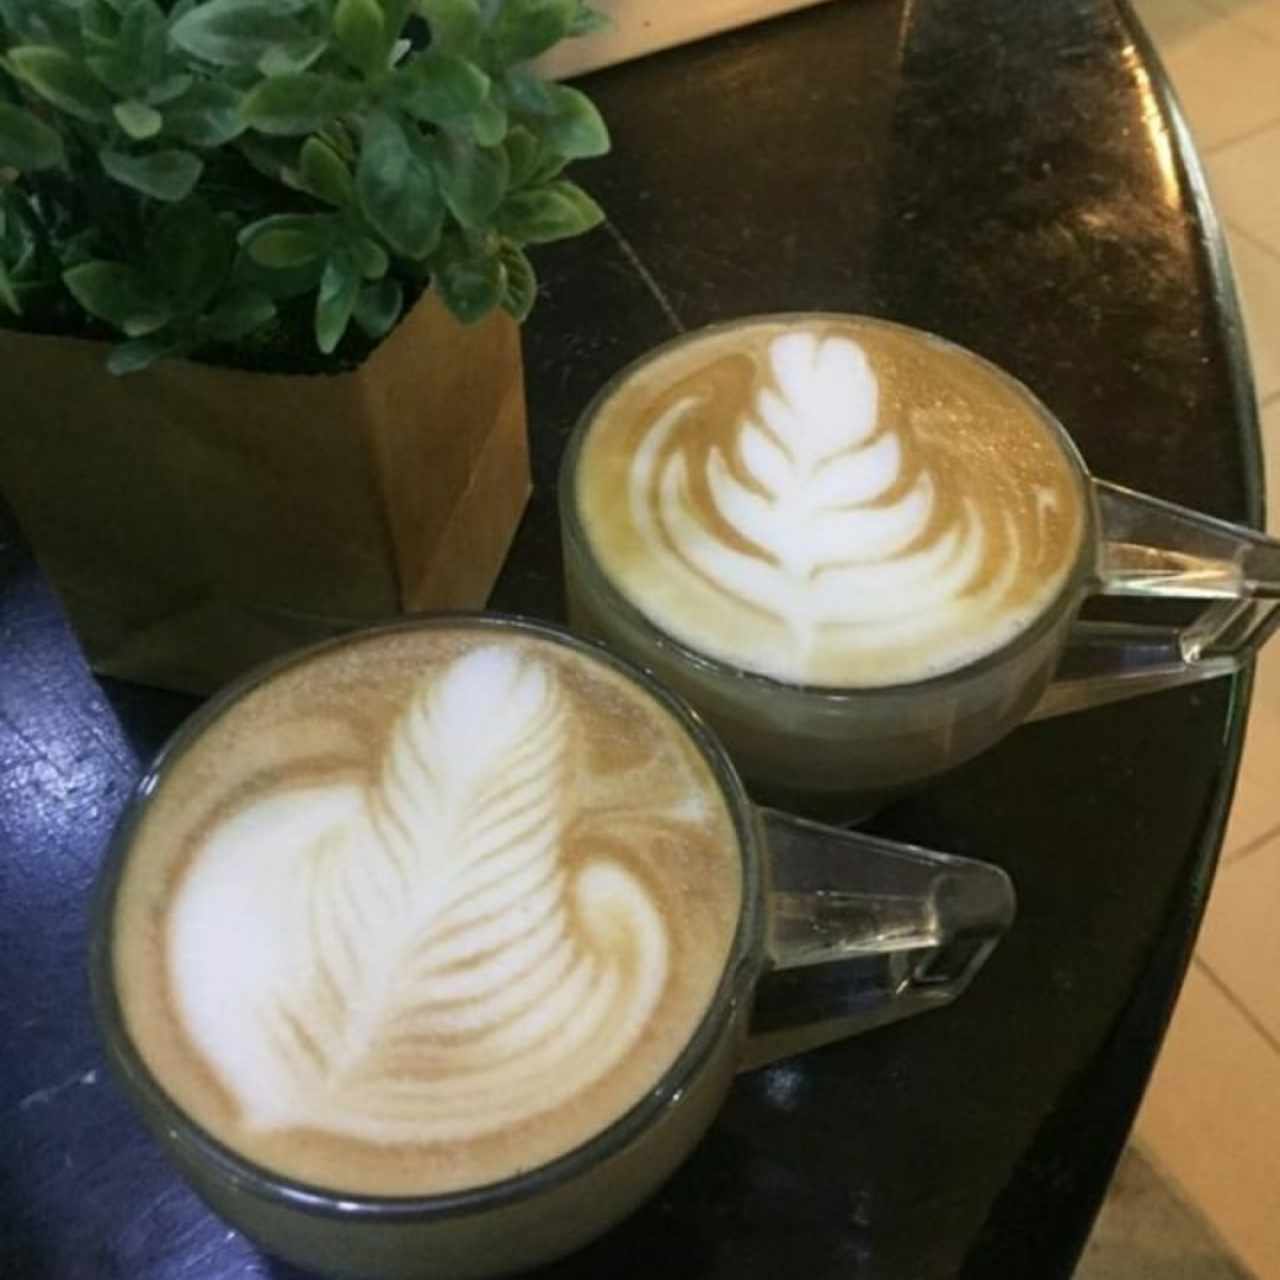 cafes